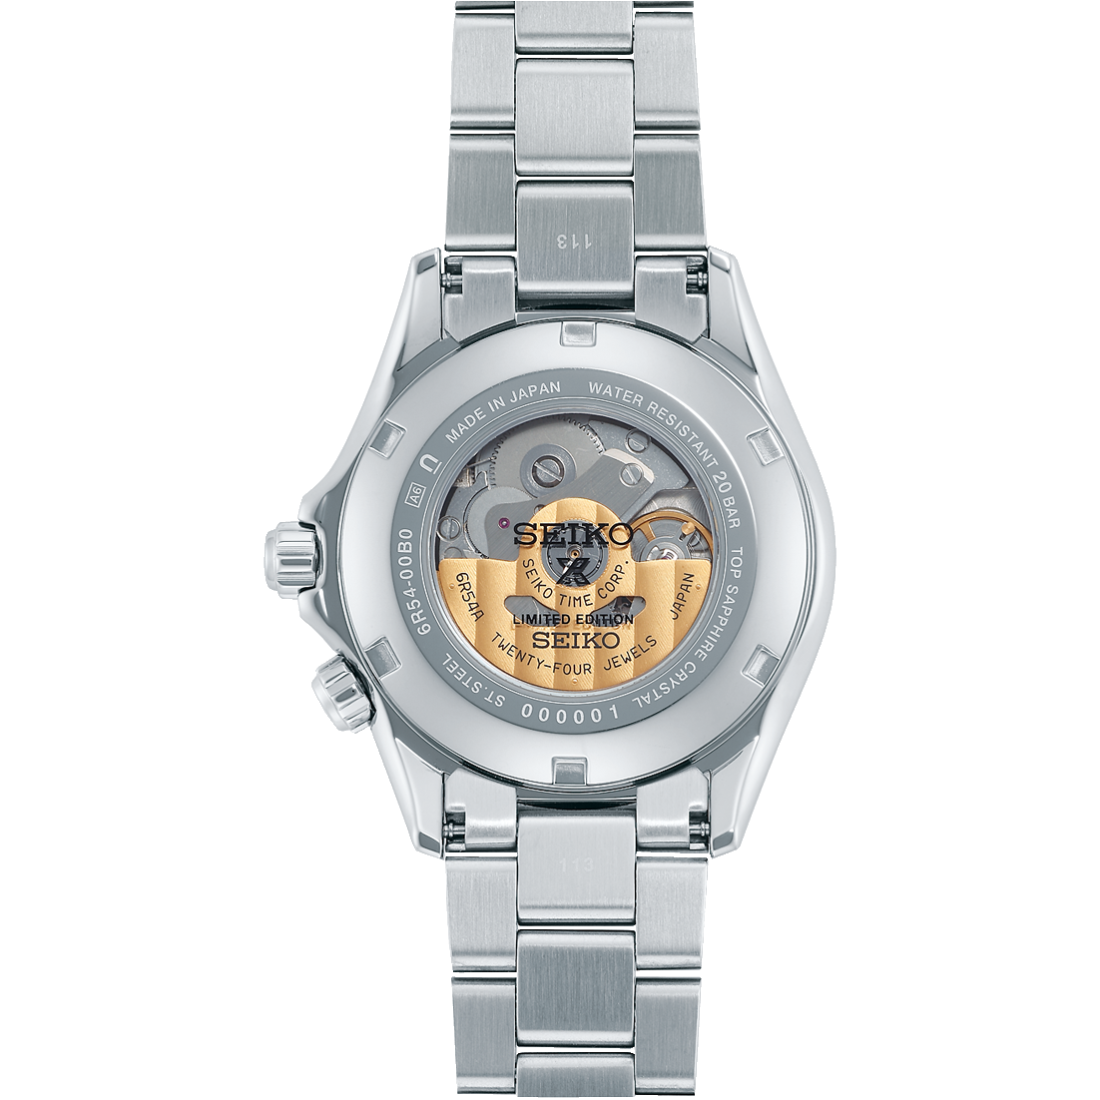 Seiko Prospex Alpinist GMT SPB409 SPB409J1 SPB409J Limited Edition 110th Anniversary Watch